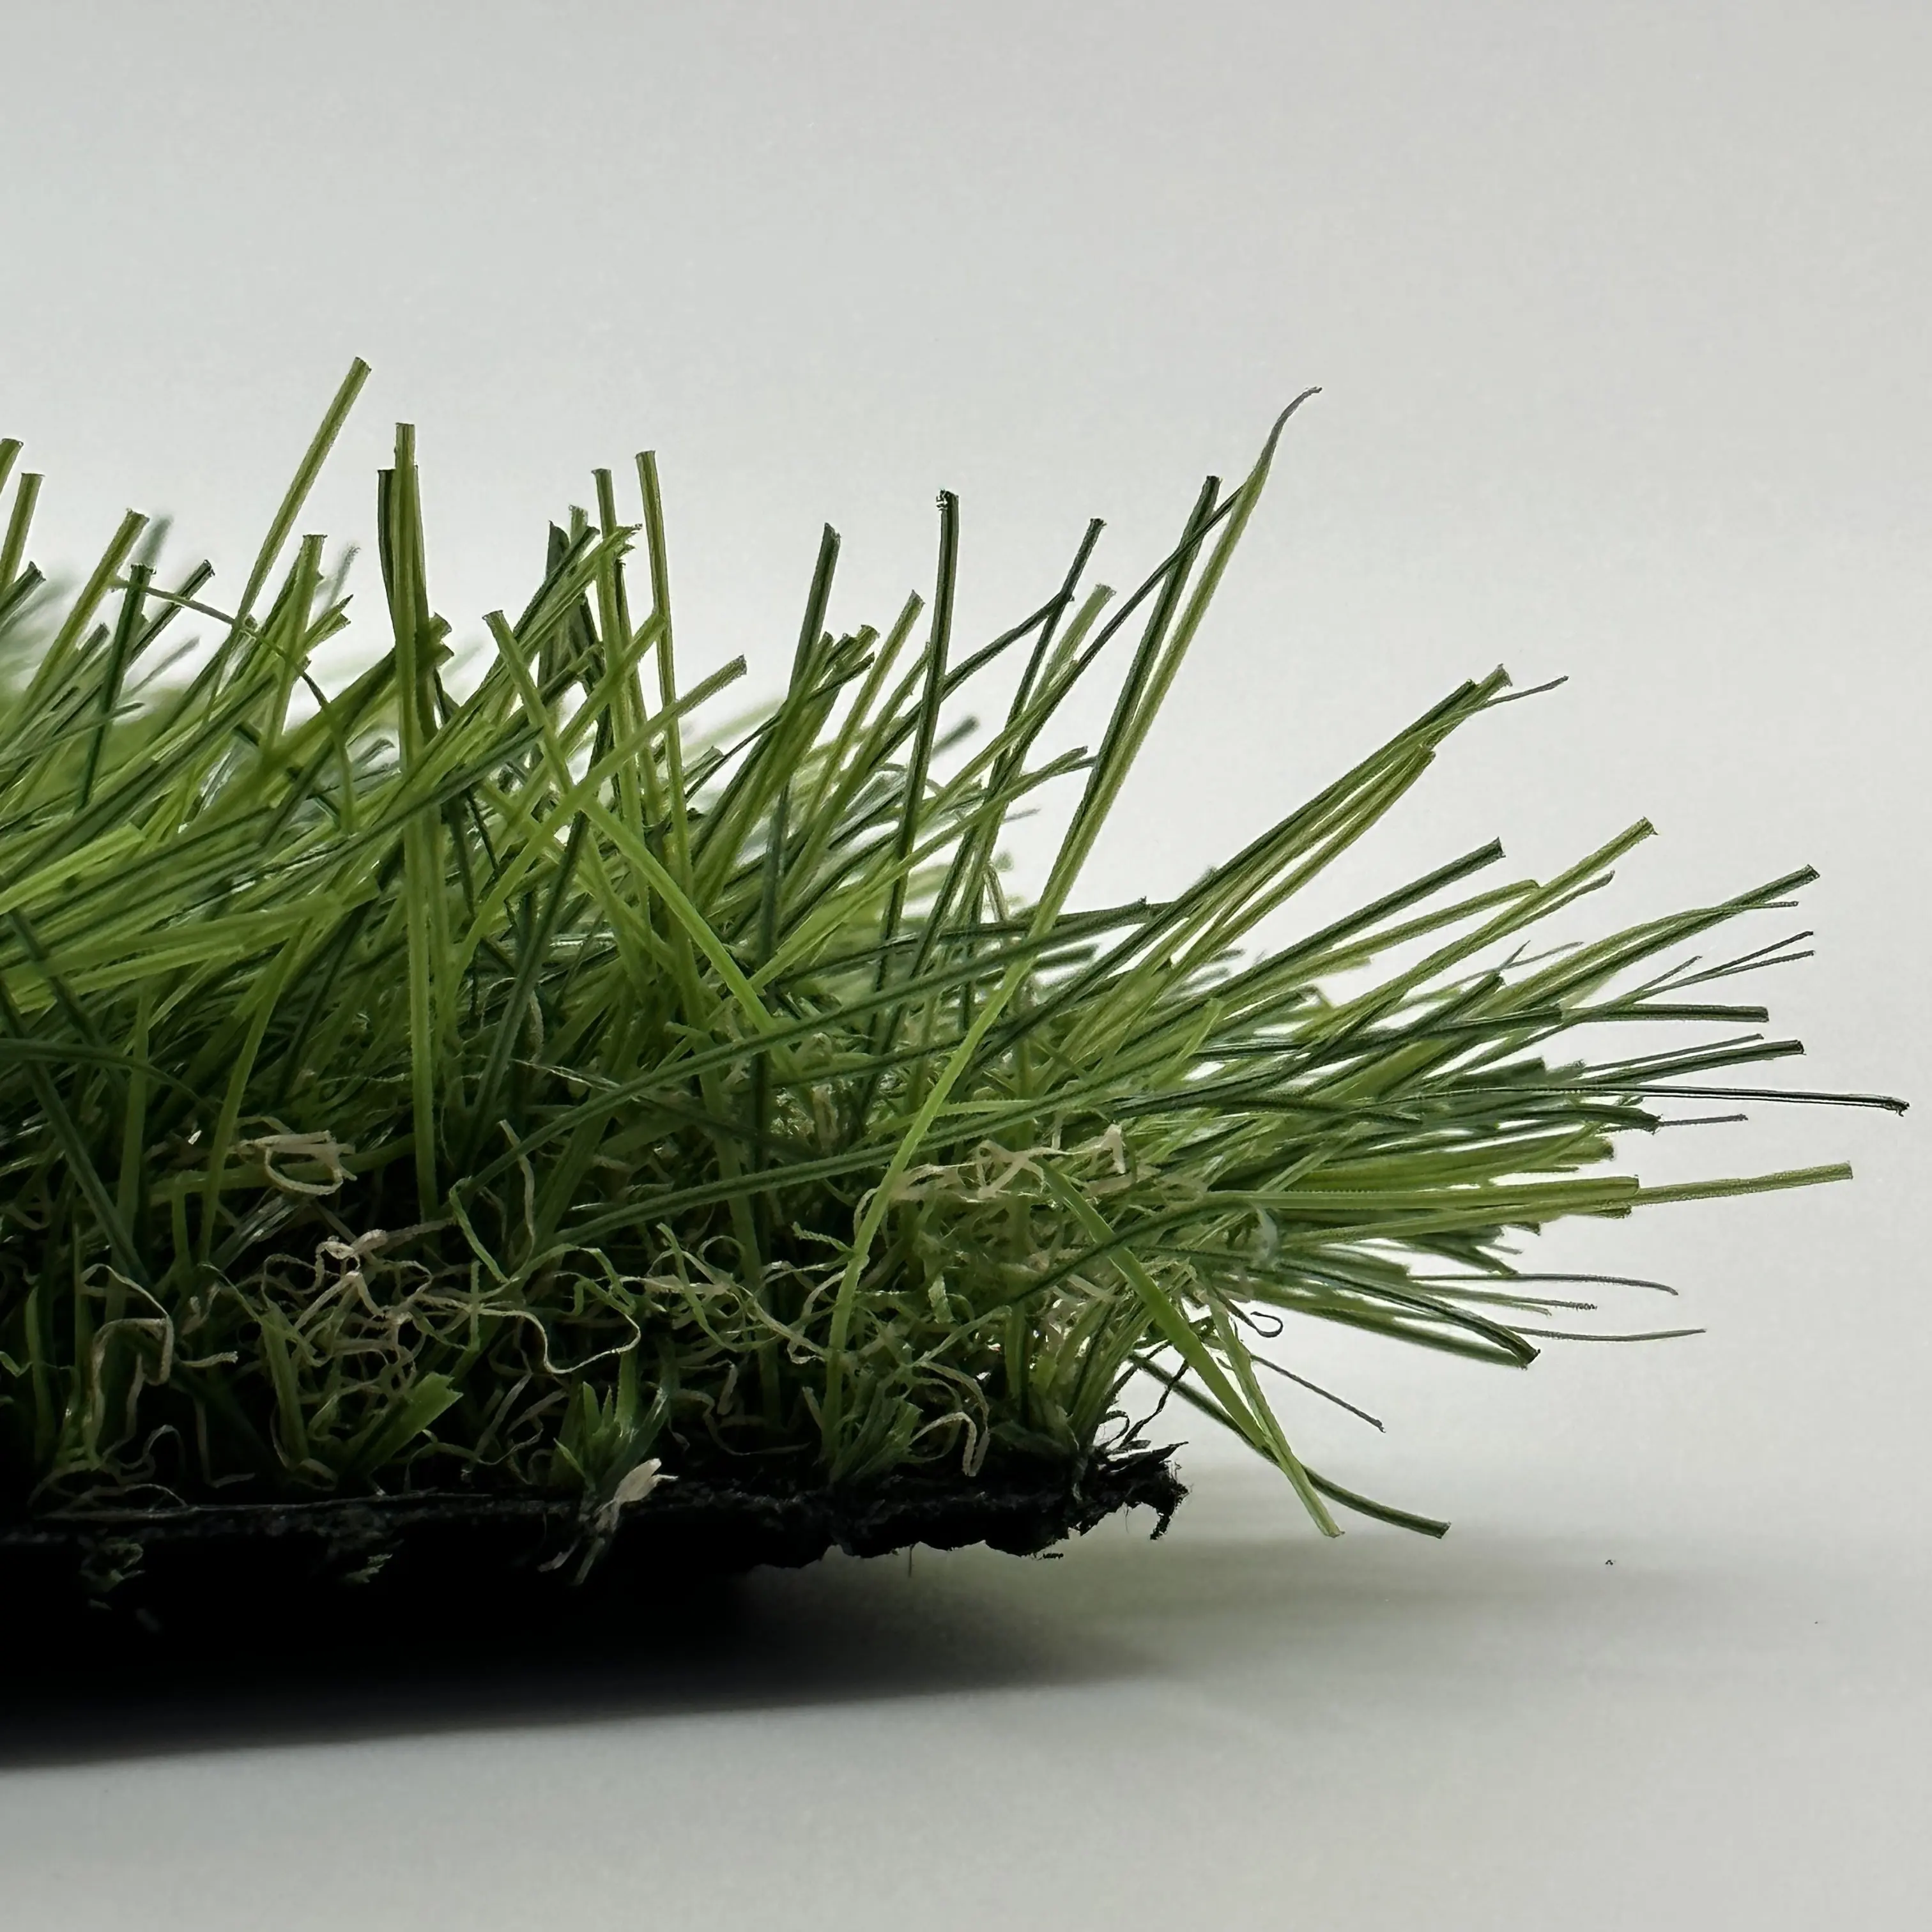 Supporto personalizzato campo di calcio erba artificiale prato artificiale mettendo erba sintetica erba sintetica verde